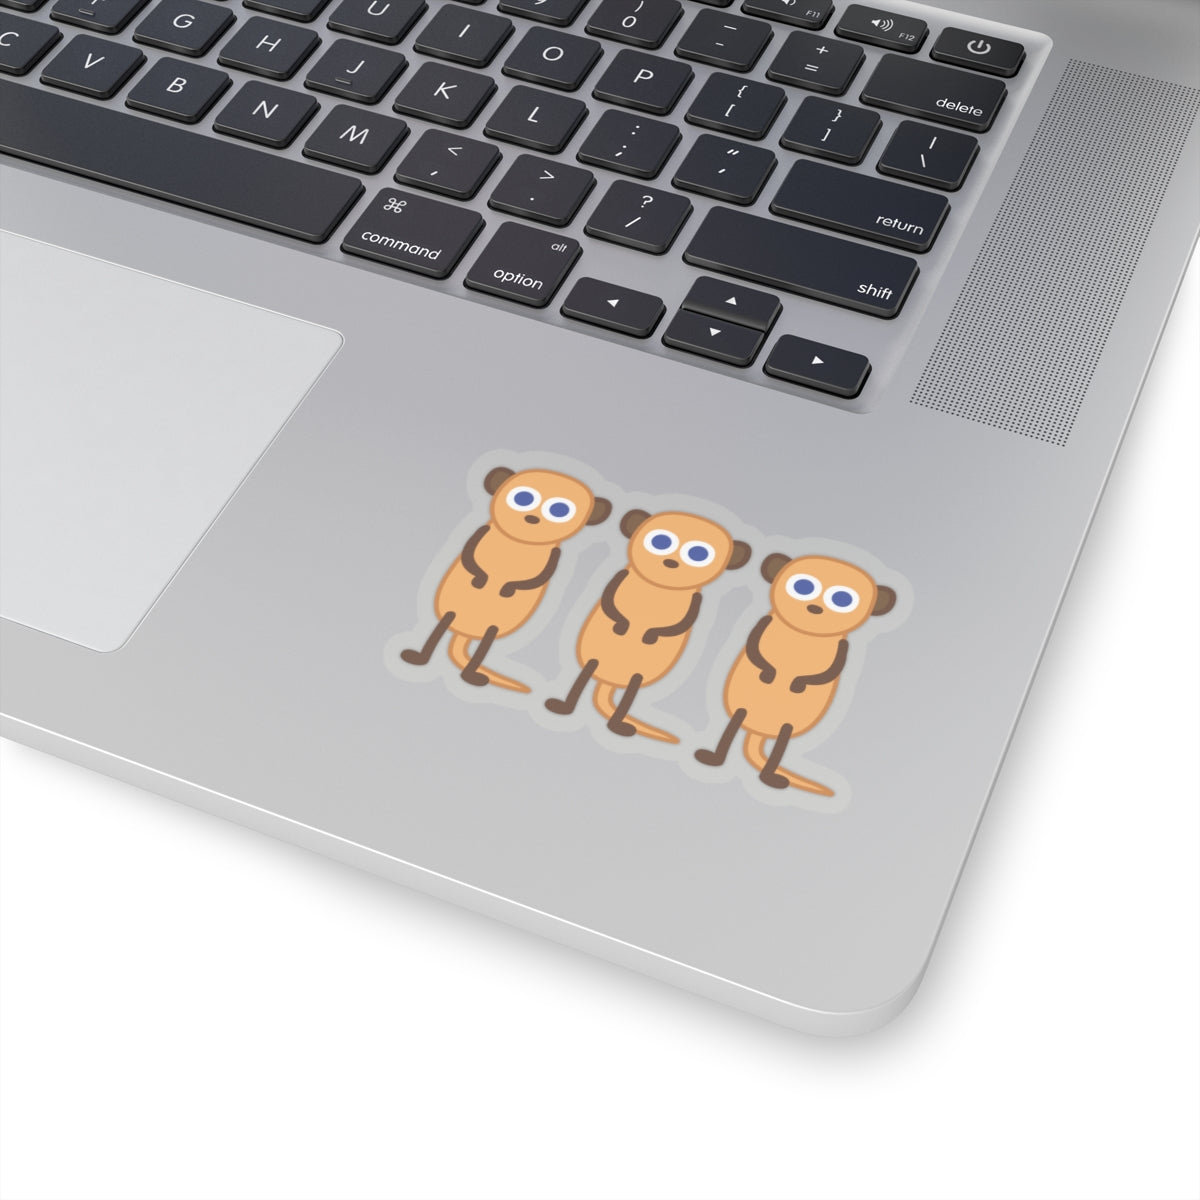 Three Meerkats sticker